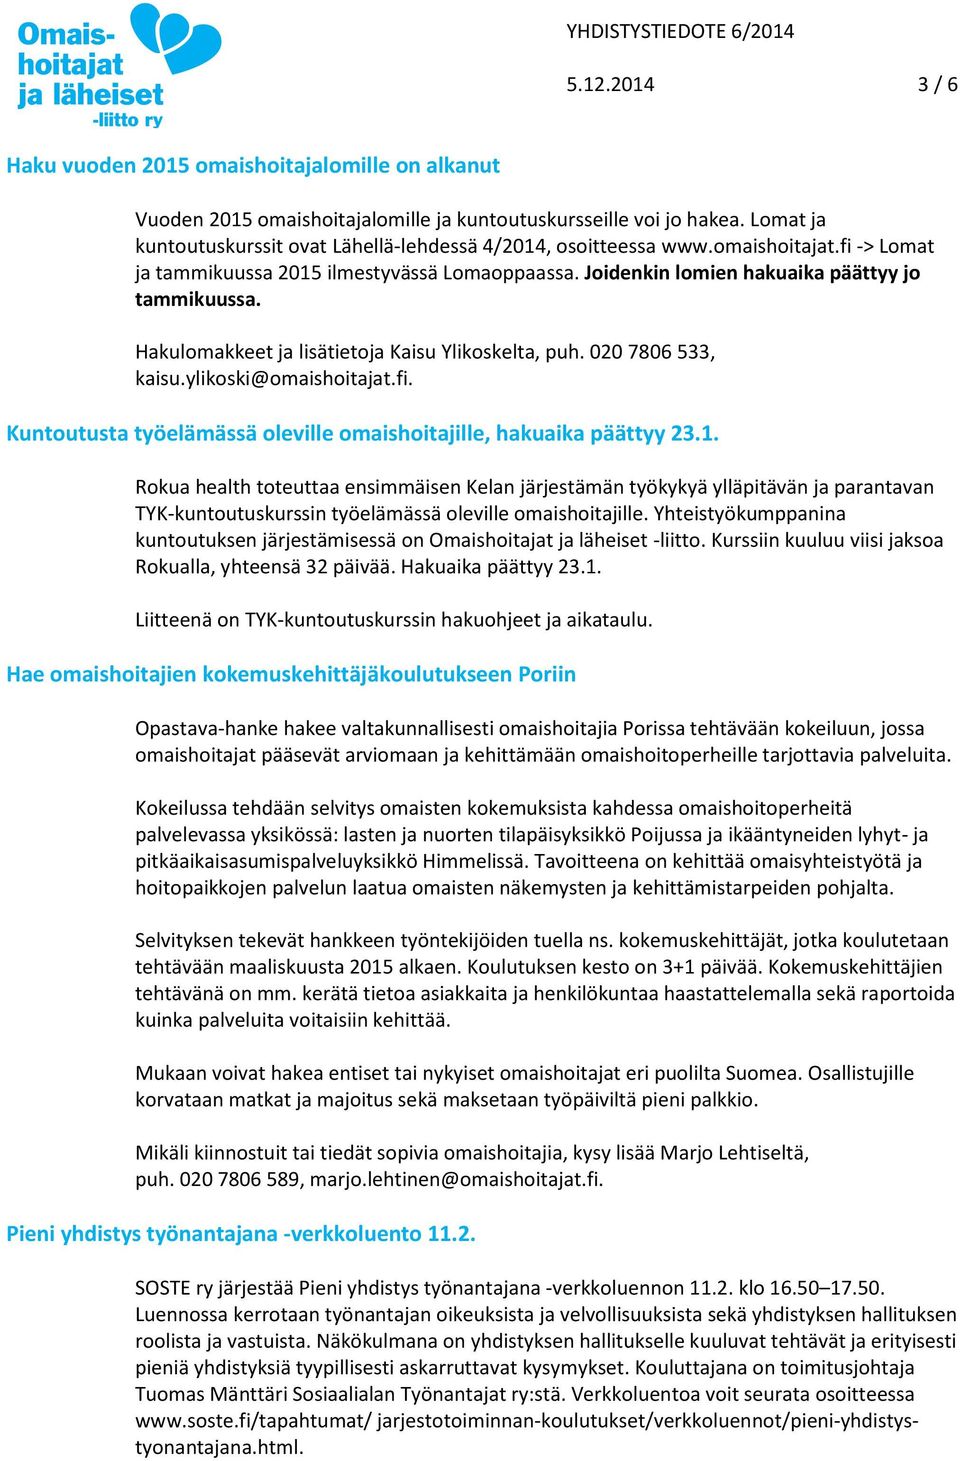 Hakulomakkeet ja lisätietoja Kaisu Ylikoskelta, puh. 020 7806 533, kaisu.ylikoski@omaishoitajat.fi. Kuntoutusta työelämässä oleville omaishoitajille, hakuaika päättyy 23.1.